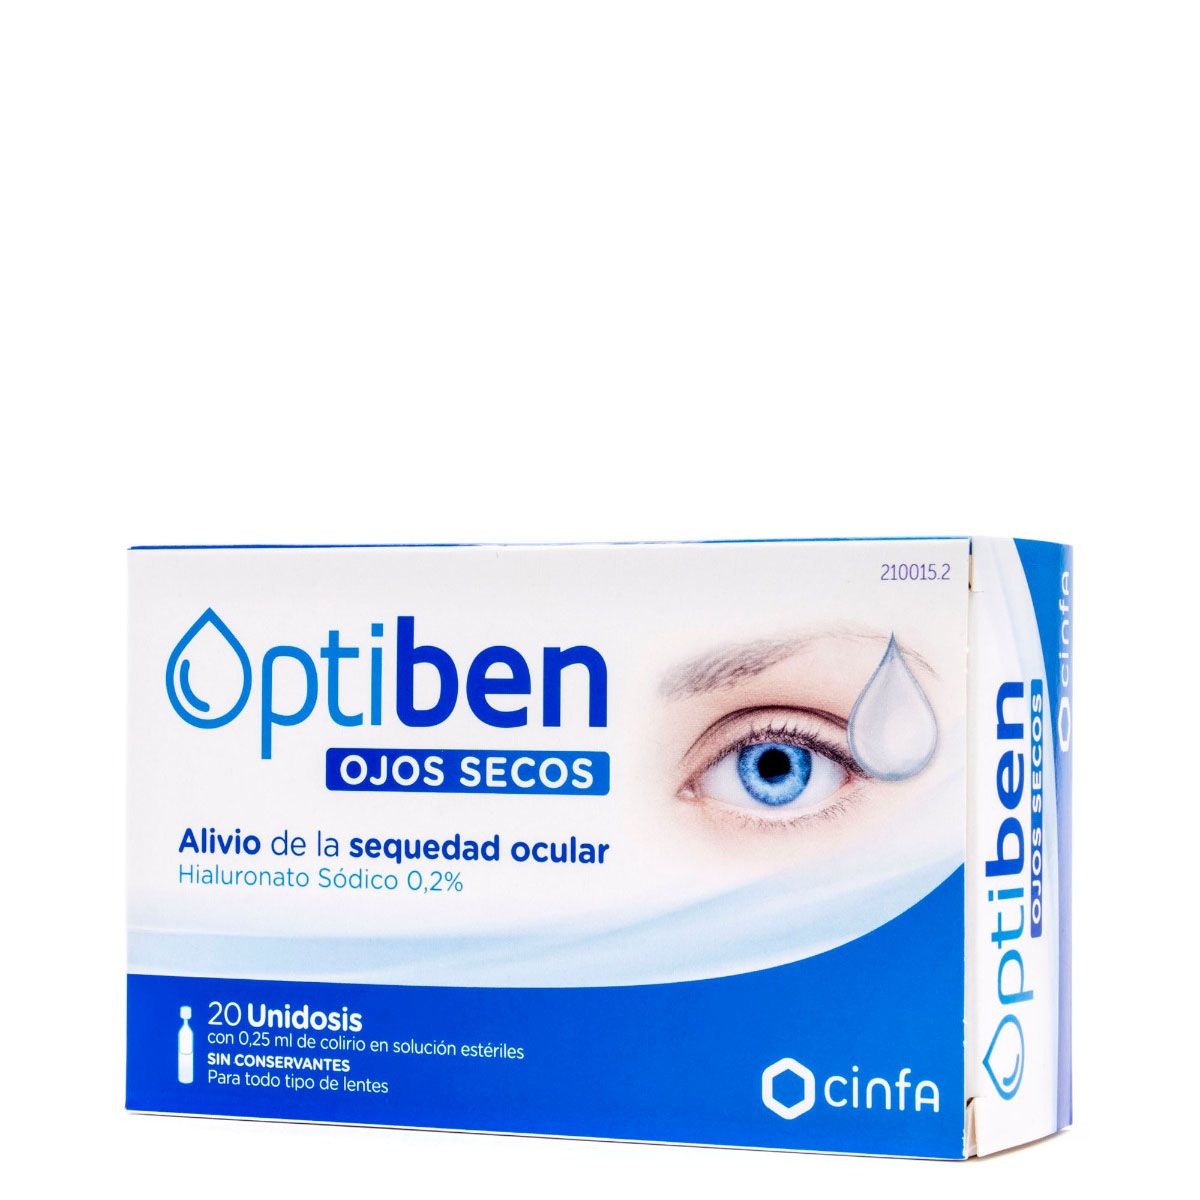 Las mejores gotas de farmacia para combatir el ojo seco y pesadez ocular